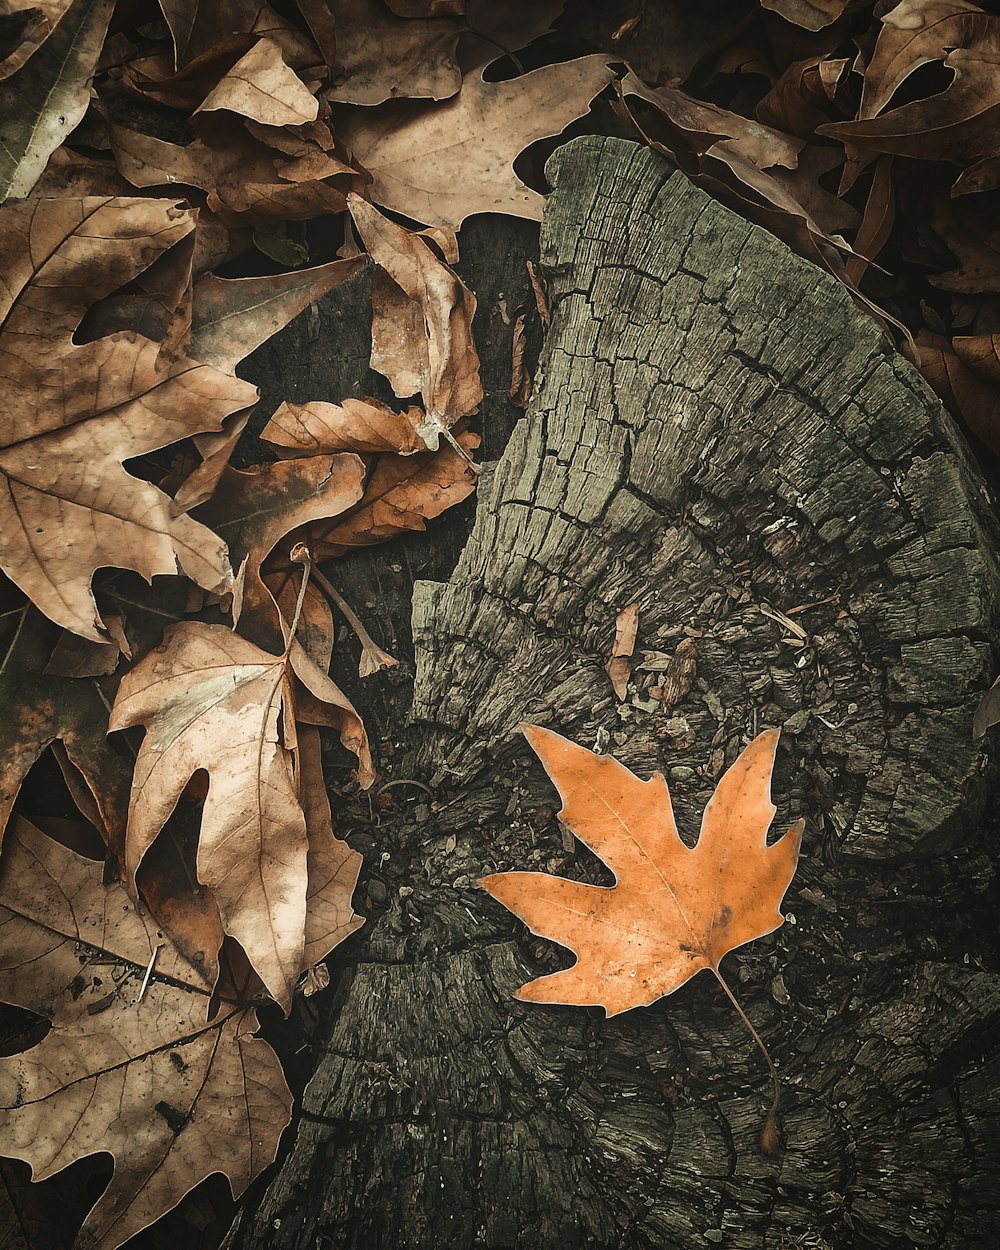 나뭇잎이 나무 그루터기에 누워있다.